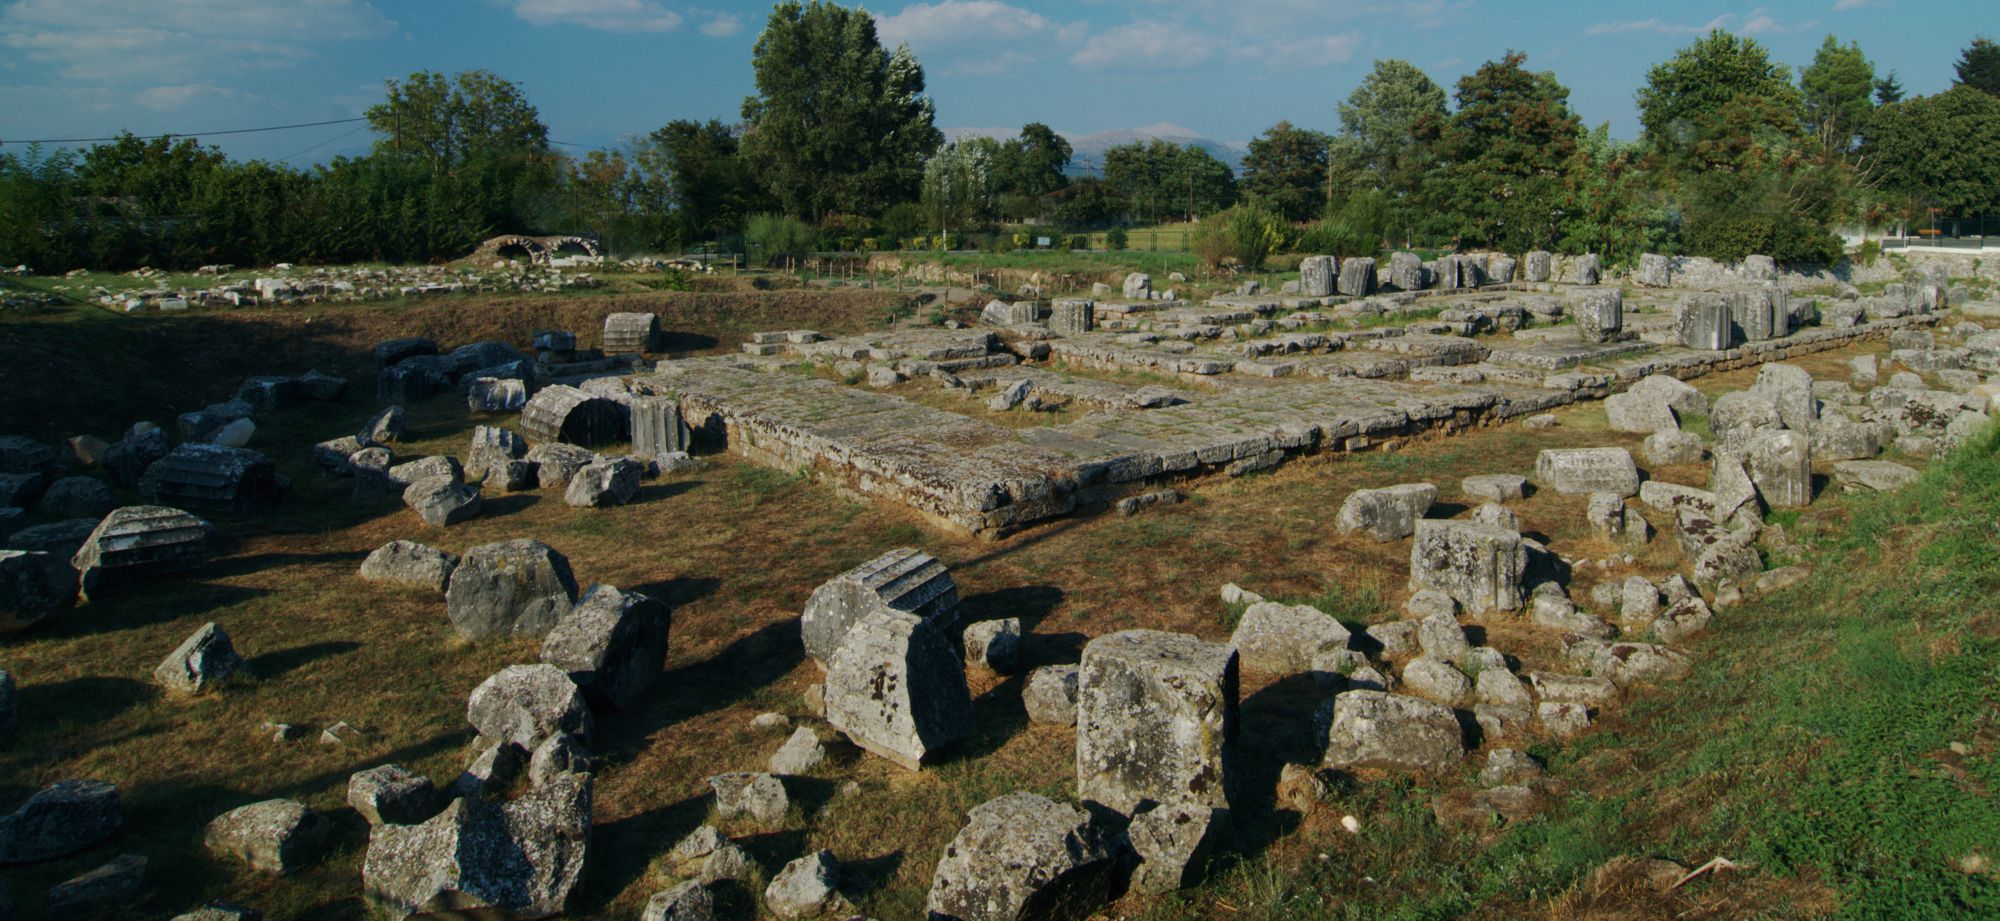 Μνημεία του Μαινάλου: Αρχαιολογικός χώρος Τεγέας